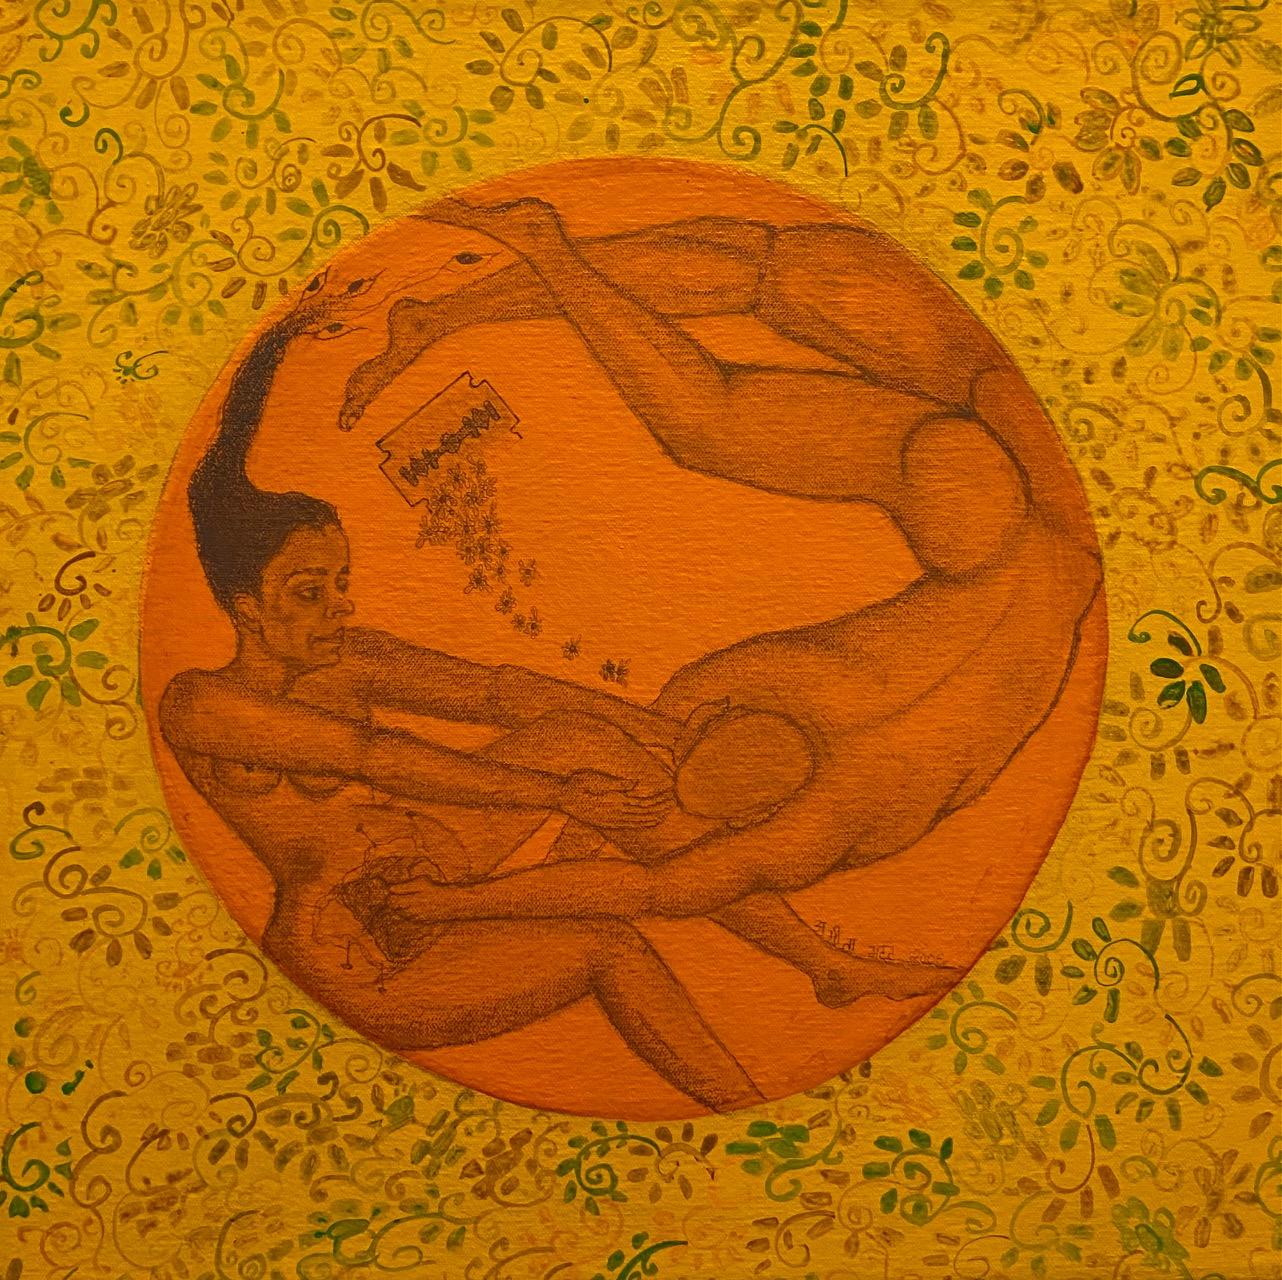 Tat Tvam Asi - You Are Me, Graphit und Acryl auf Leinwand, Symbolismus, indische Kunst